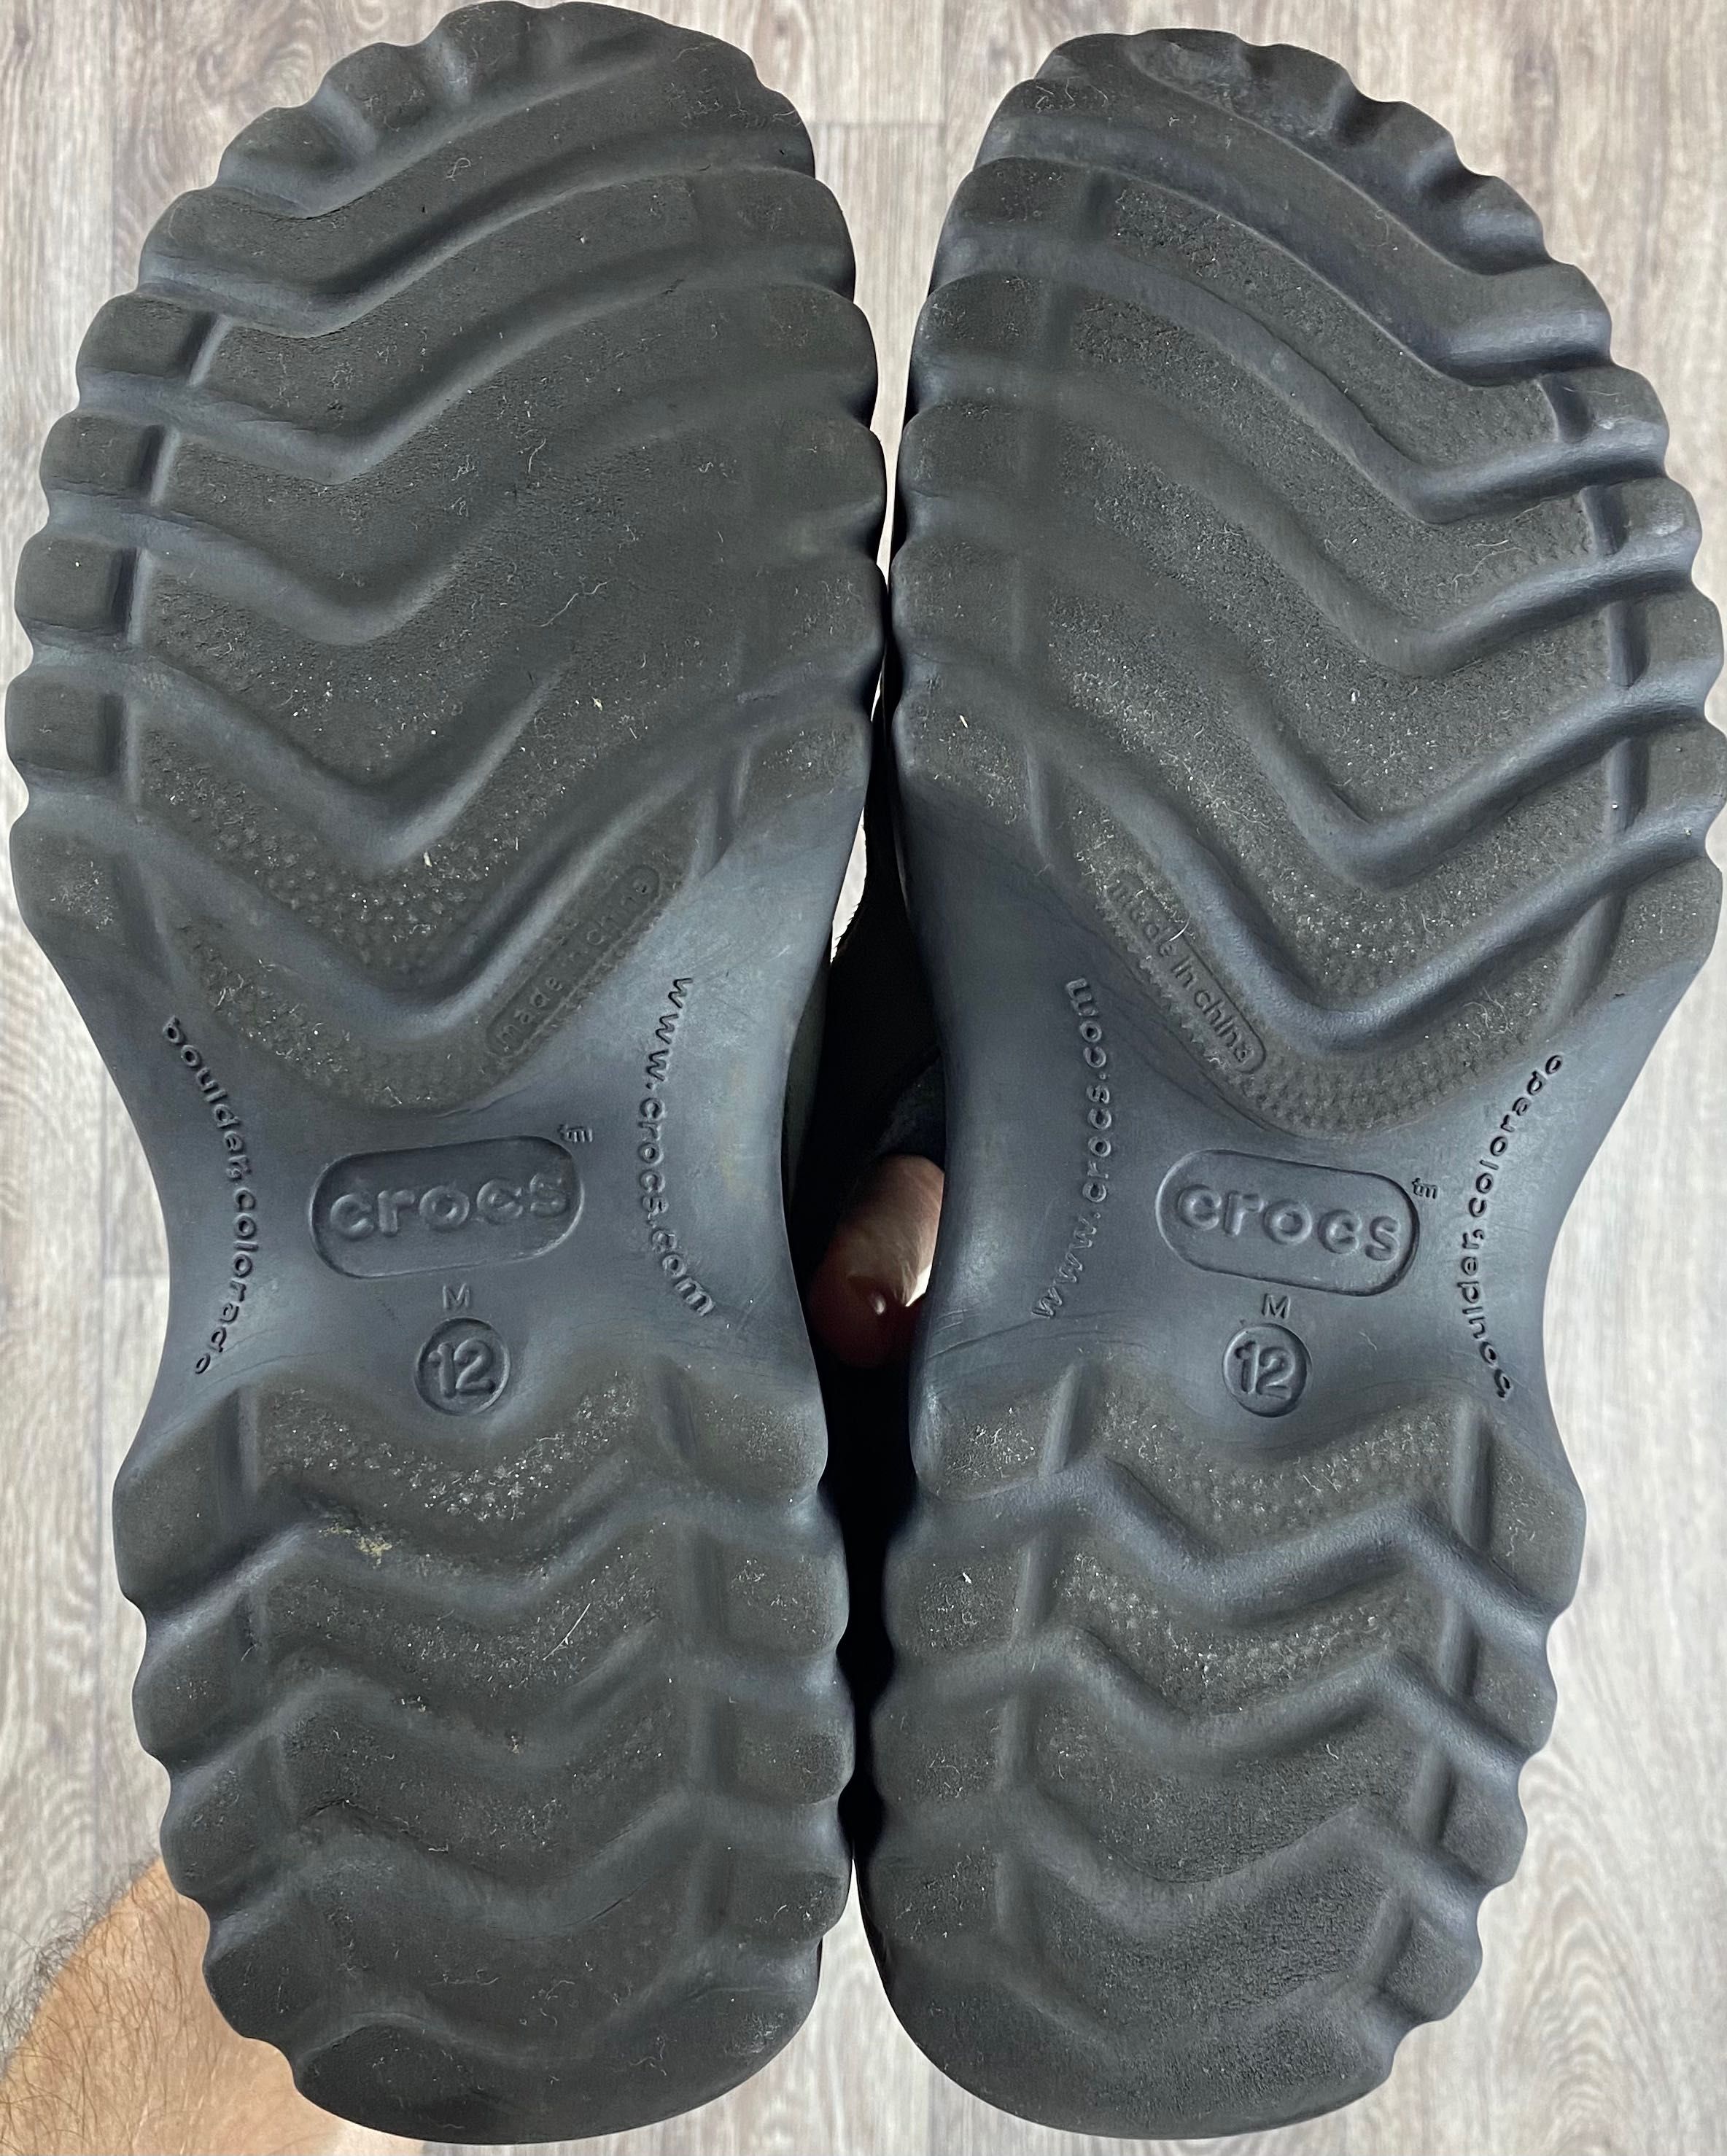 Crocs сандали M12 45 размер кожаные коричневые оригинал